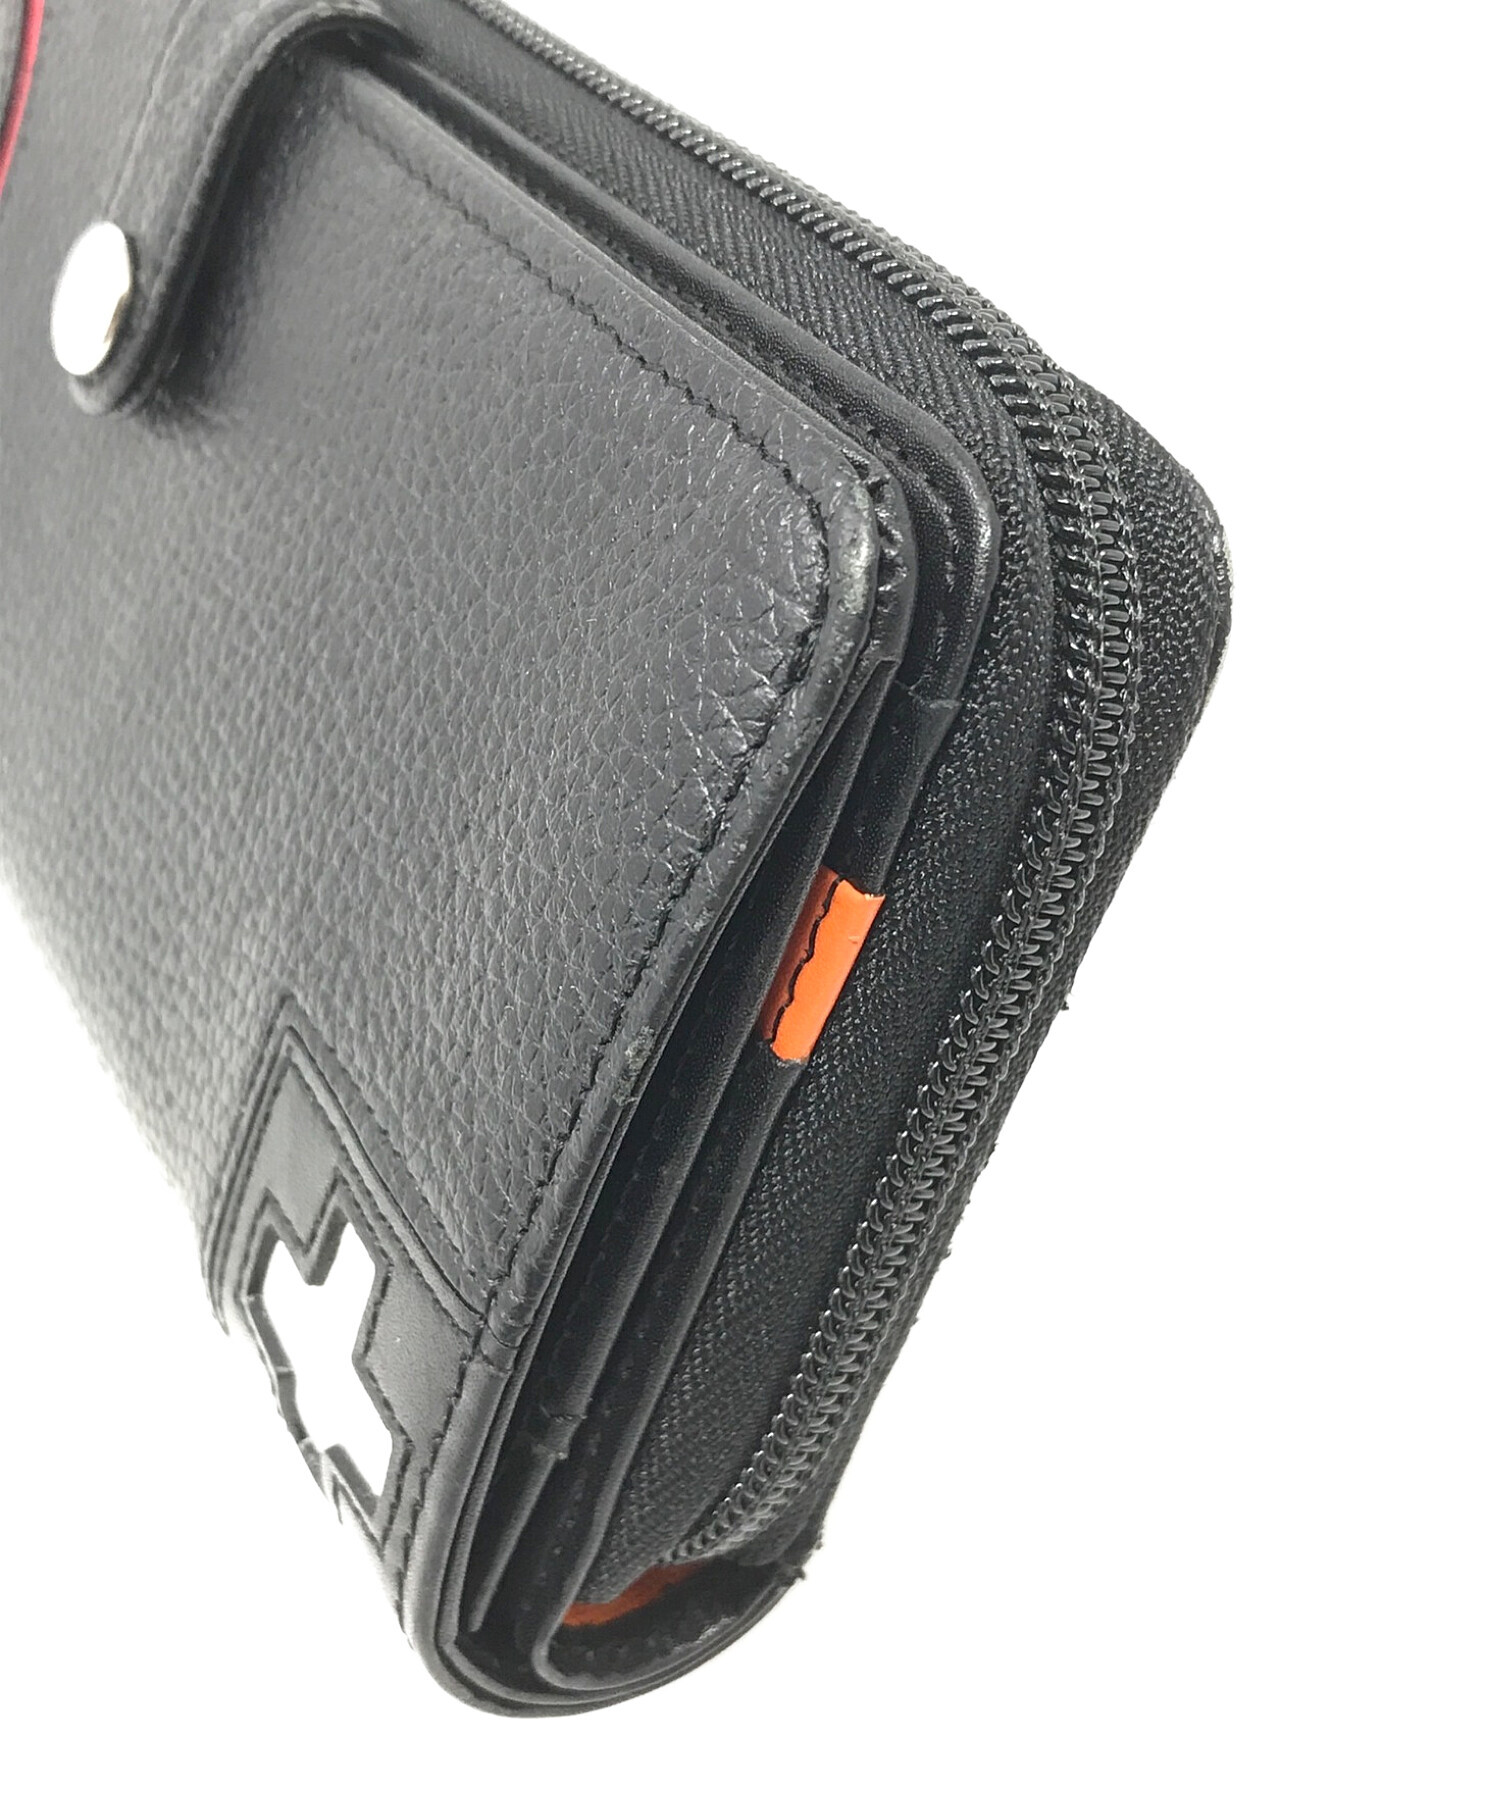 CASTELBAJAC (カステルバジャック) 長財布 サイズ:実寸サイズにてご確認ください。